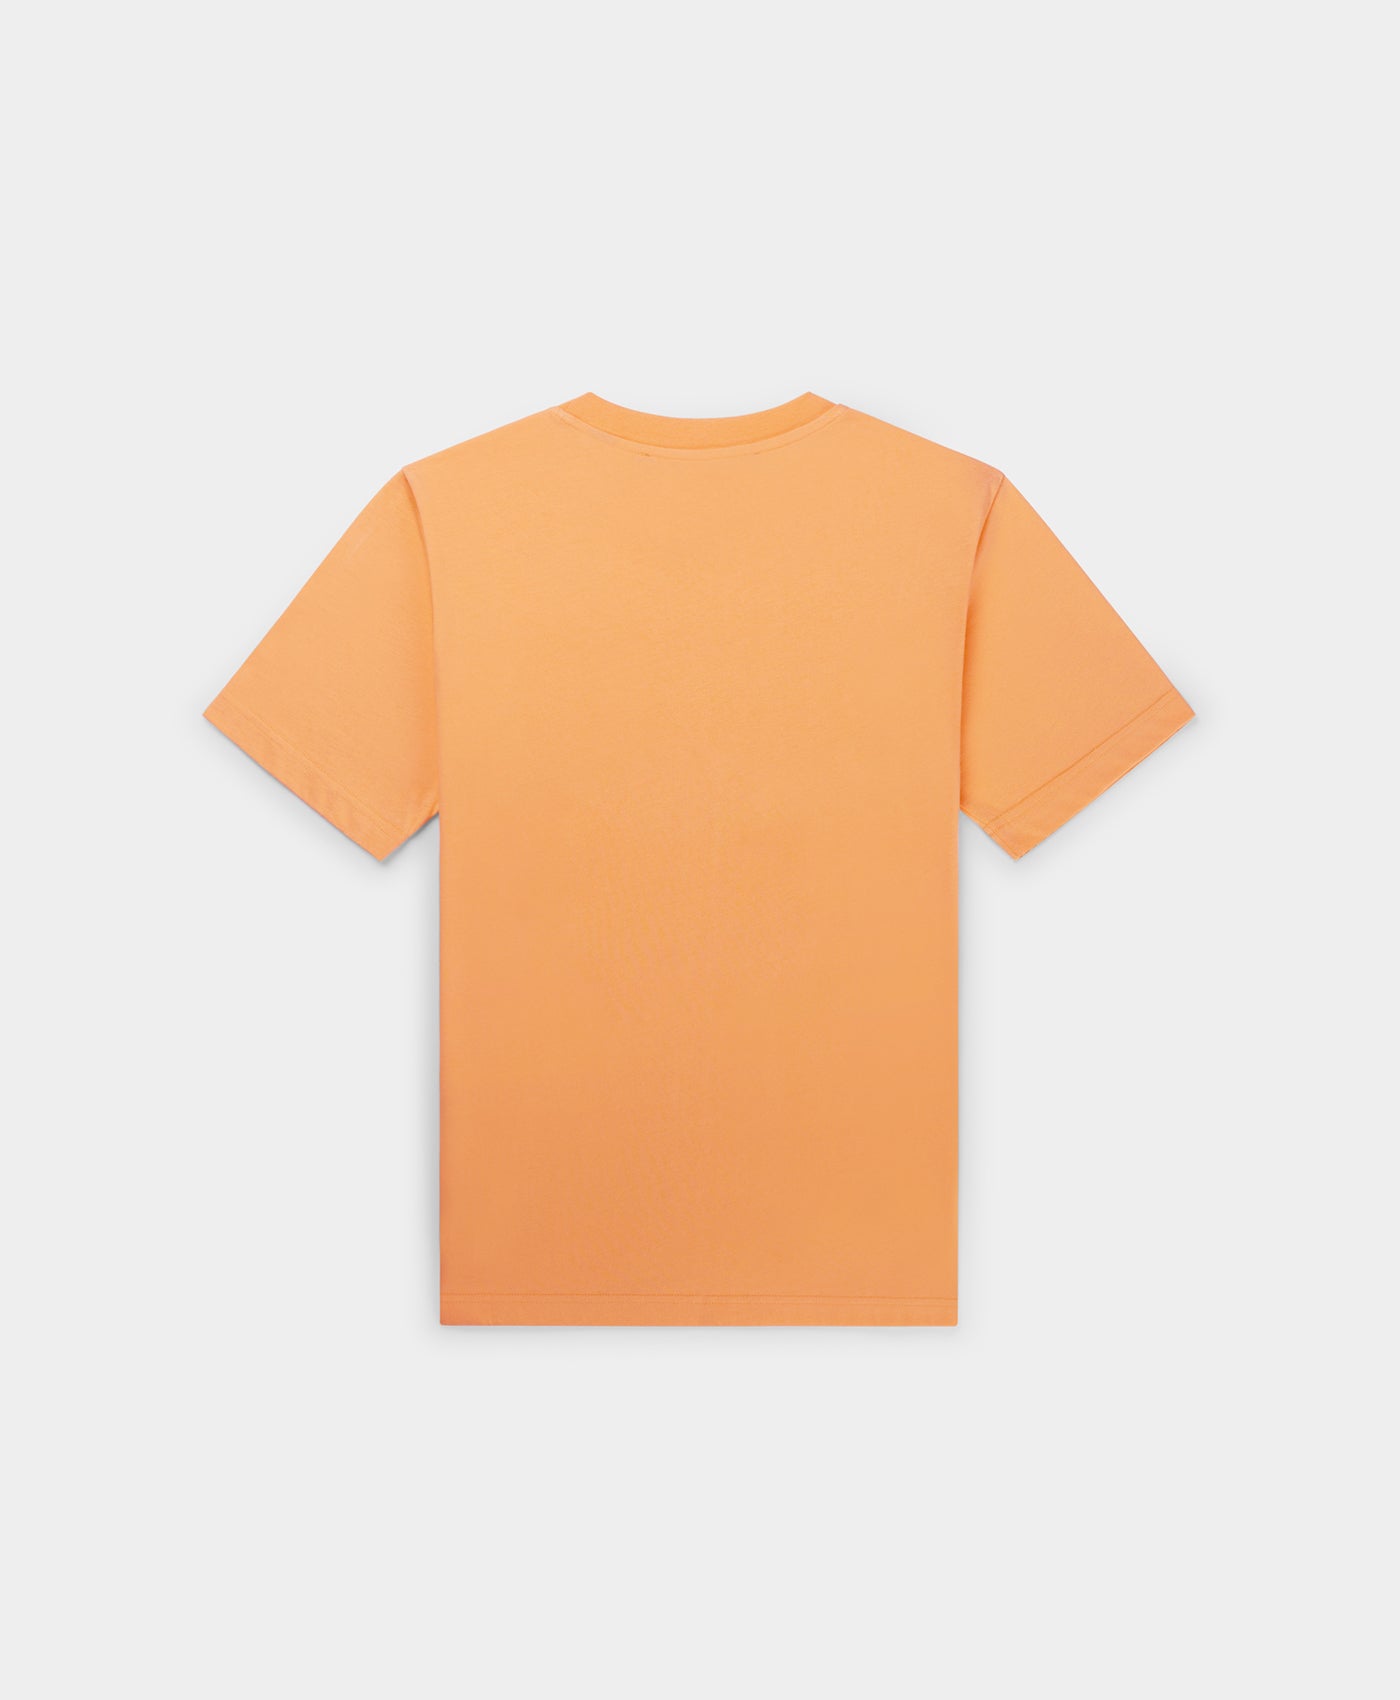 DP - Tangerine Orange Raisa T-Shirt - Packshot - Rear